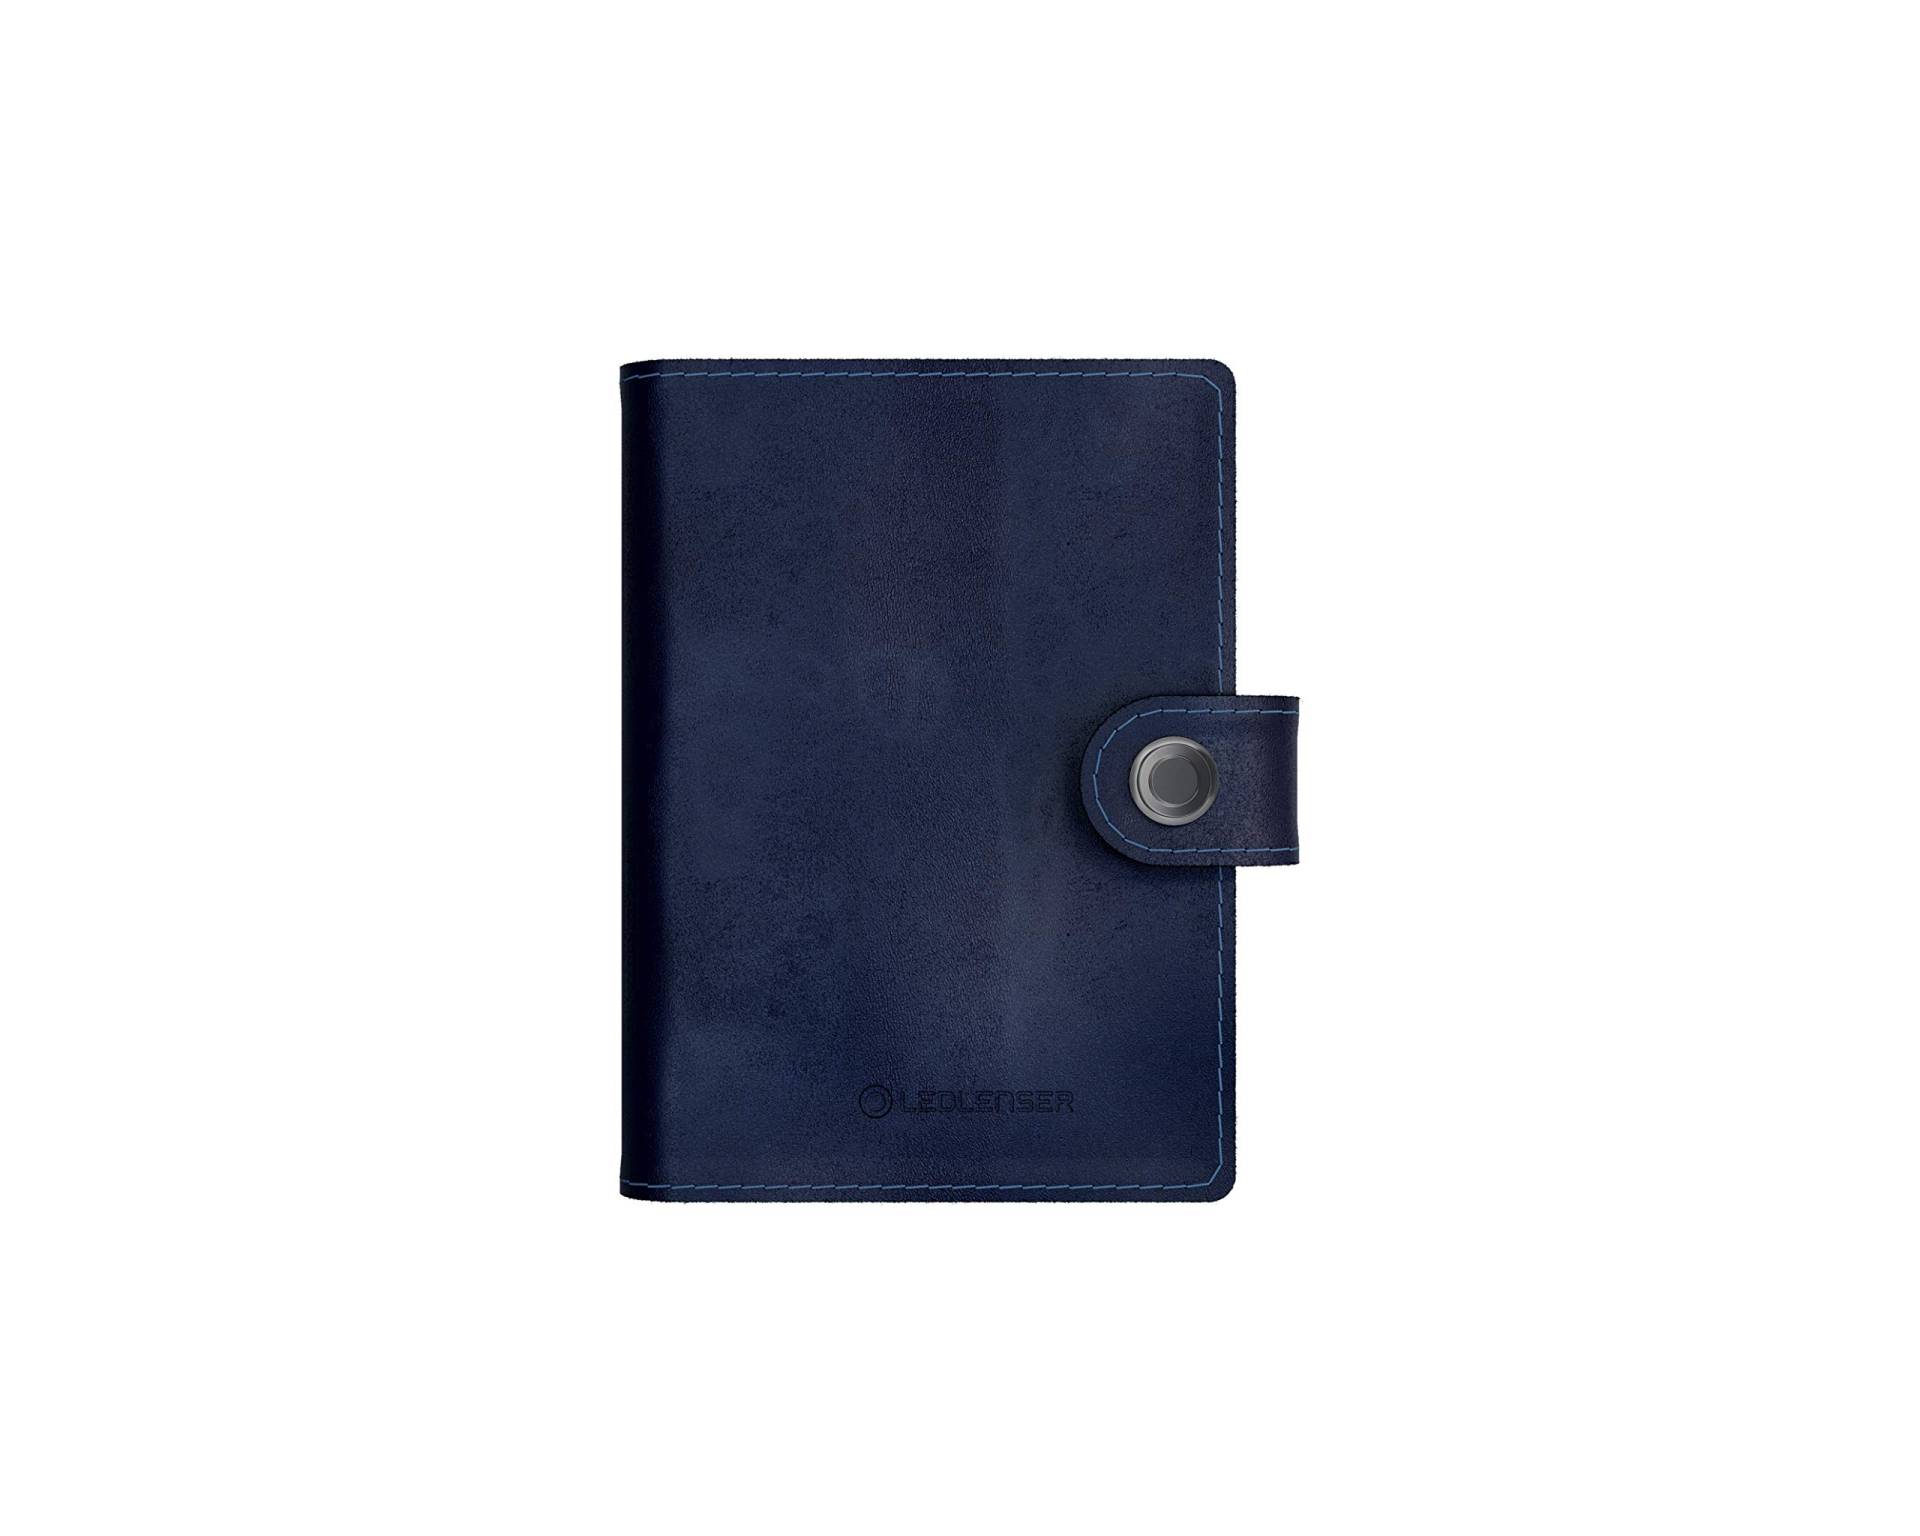 Ledlenser Lite Wallet Portemonnaie, Classic Midnight Blue, integrierter RFID-Schutz, aufladbares LED-Licht, 150 Lumen, Kartenhalter (Ausweise, Bankkarten, …), USB-C, Geldbörse, Kartenetui, Leder von Ledlenser